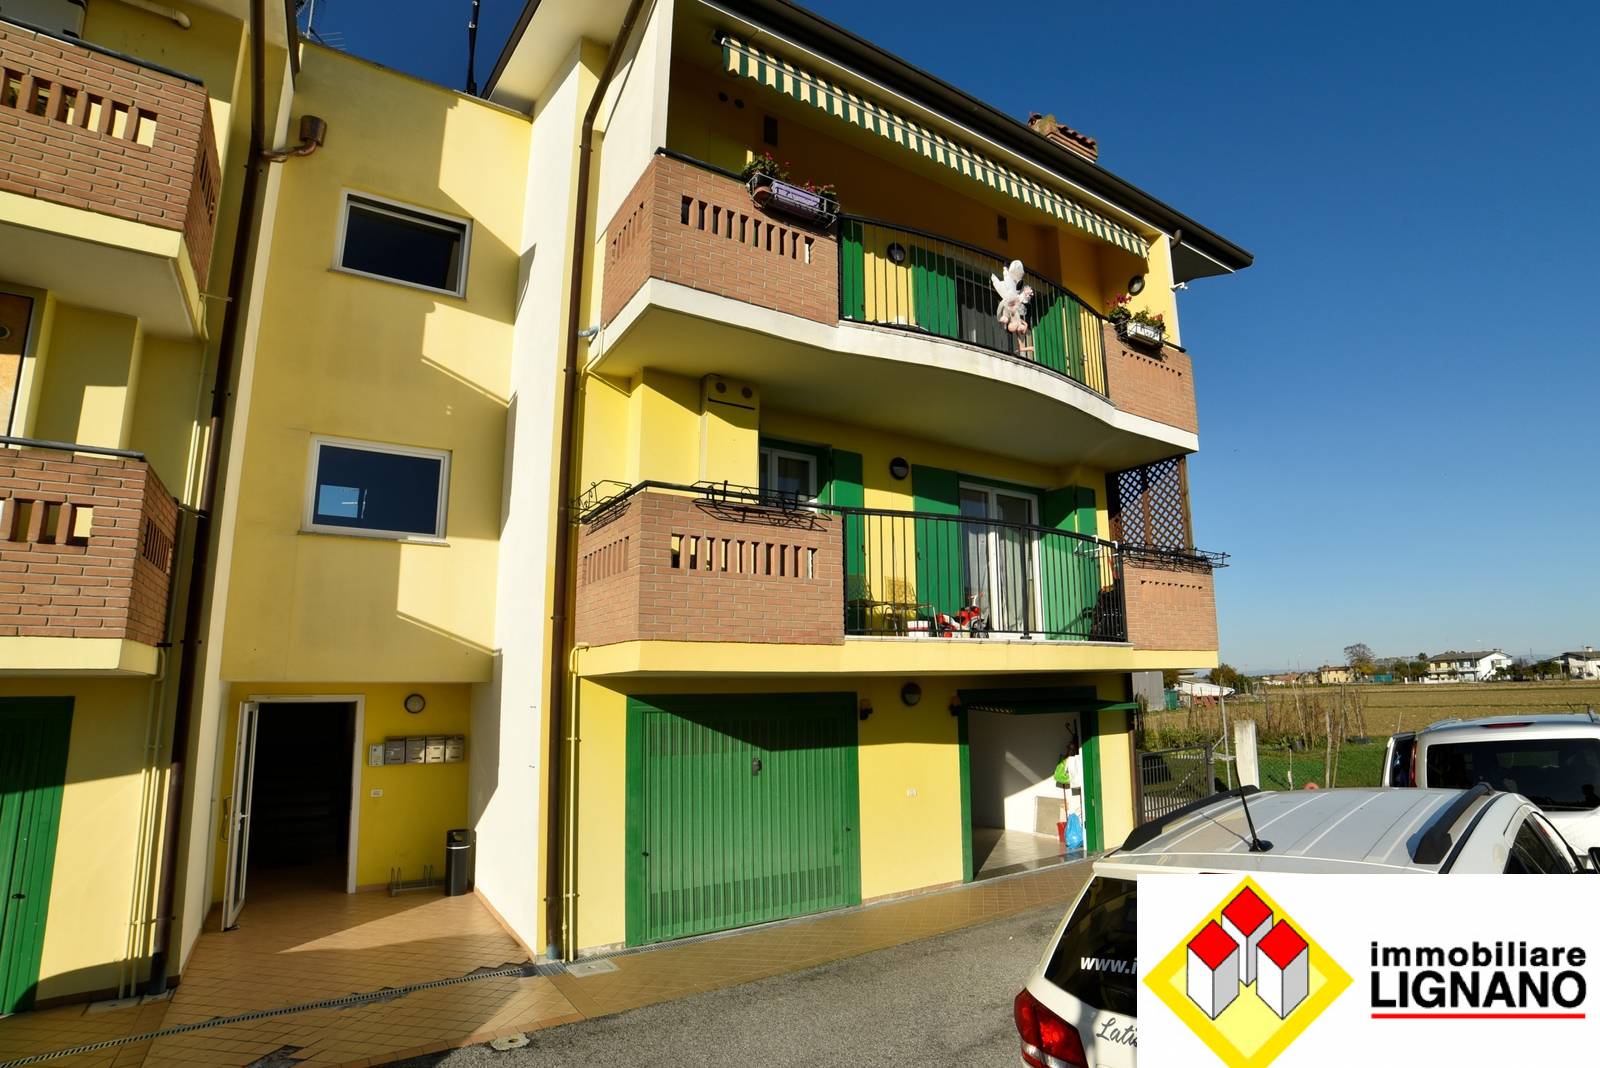 Appartamento in vendita a Latisana, 3 locali, zona Zona: Pertegada, prezzo € 150.000 | CambioCasa.it